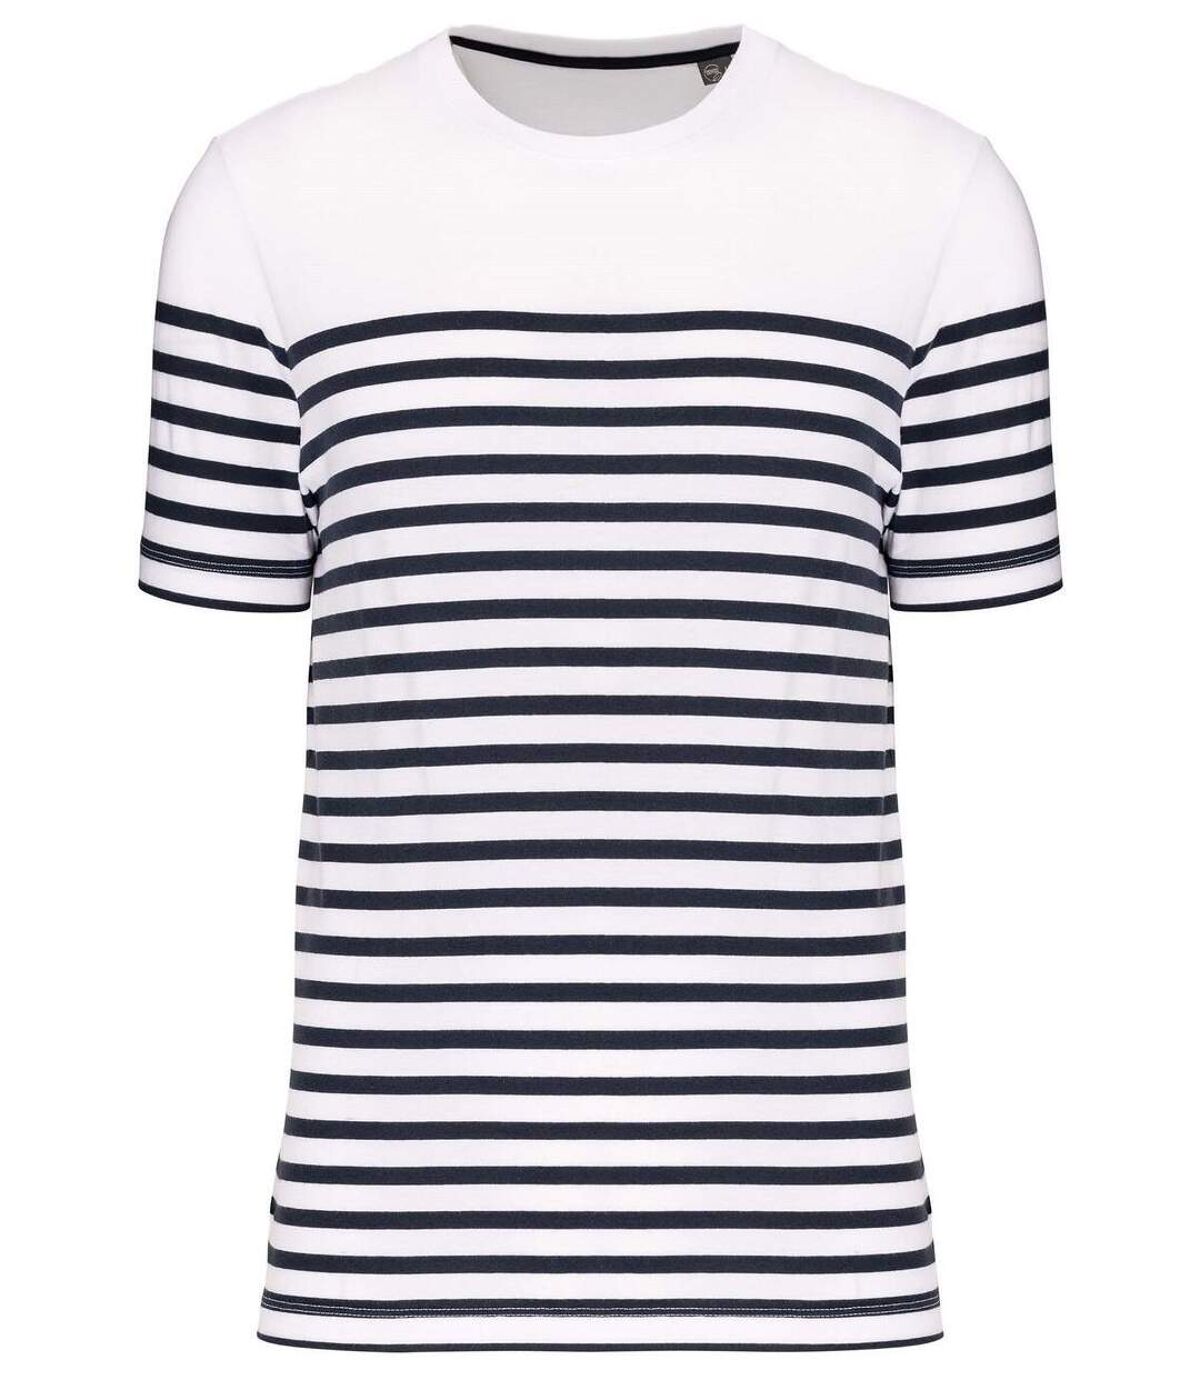 T-shirt rayé coton bio marinière homme - k3033 - blanc et bleu marine